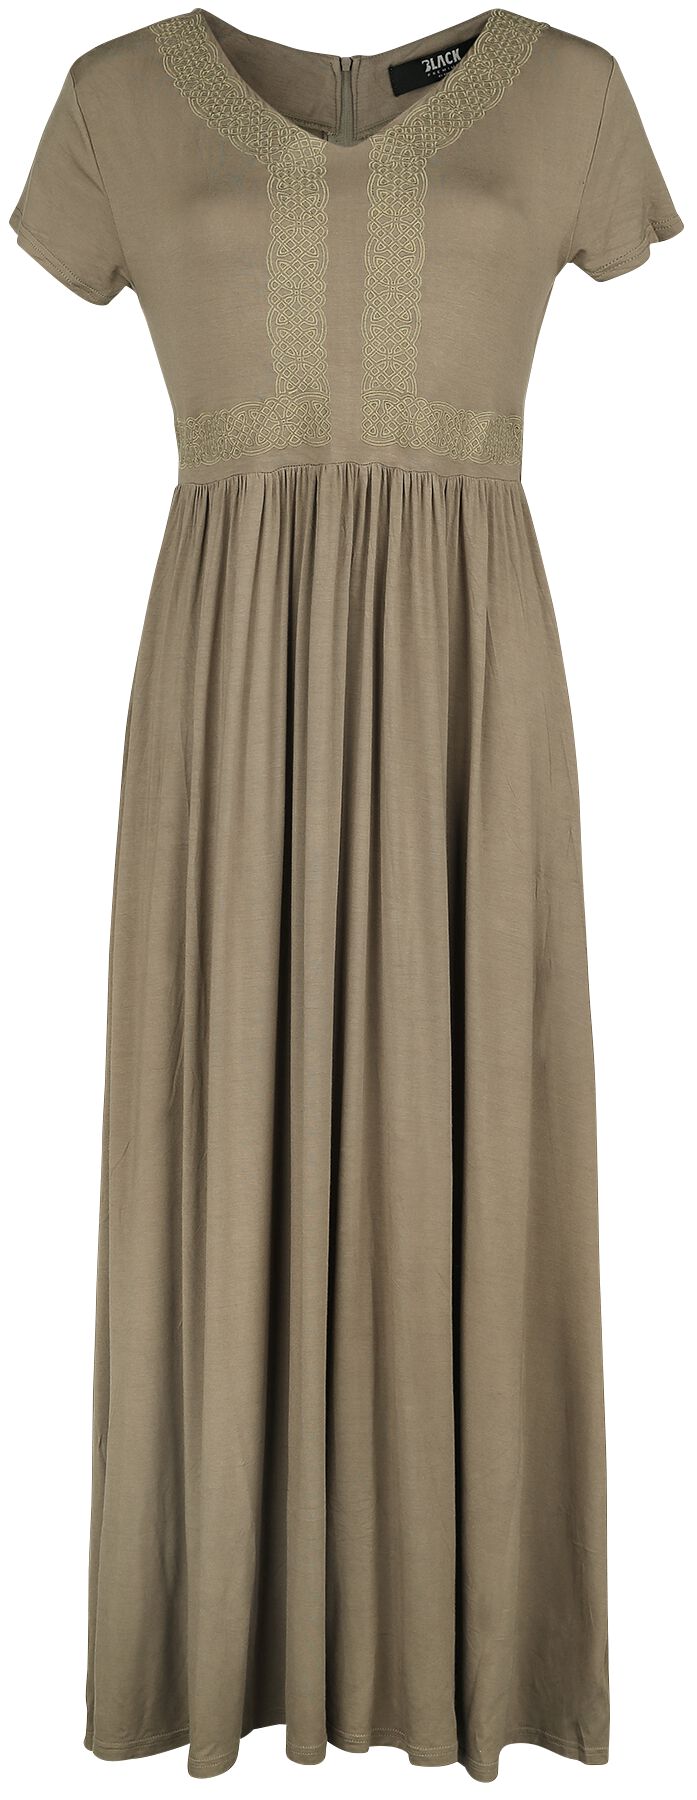 Image of Black Premium by EMP Langes Kleid mit Knotenborte Kleid beige